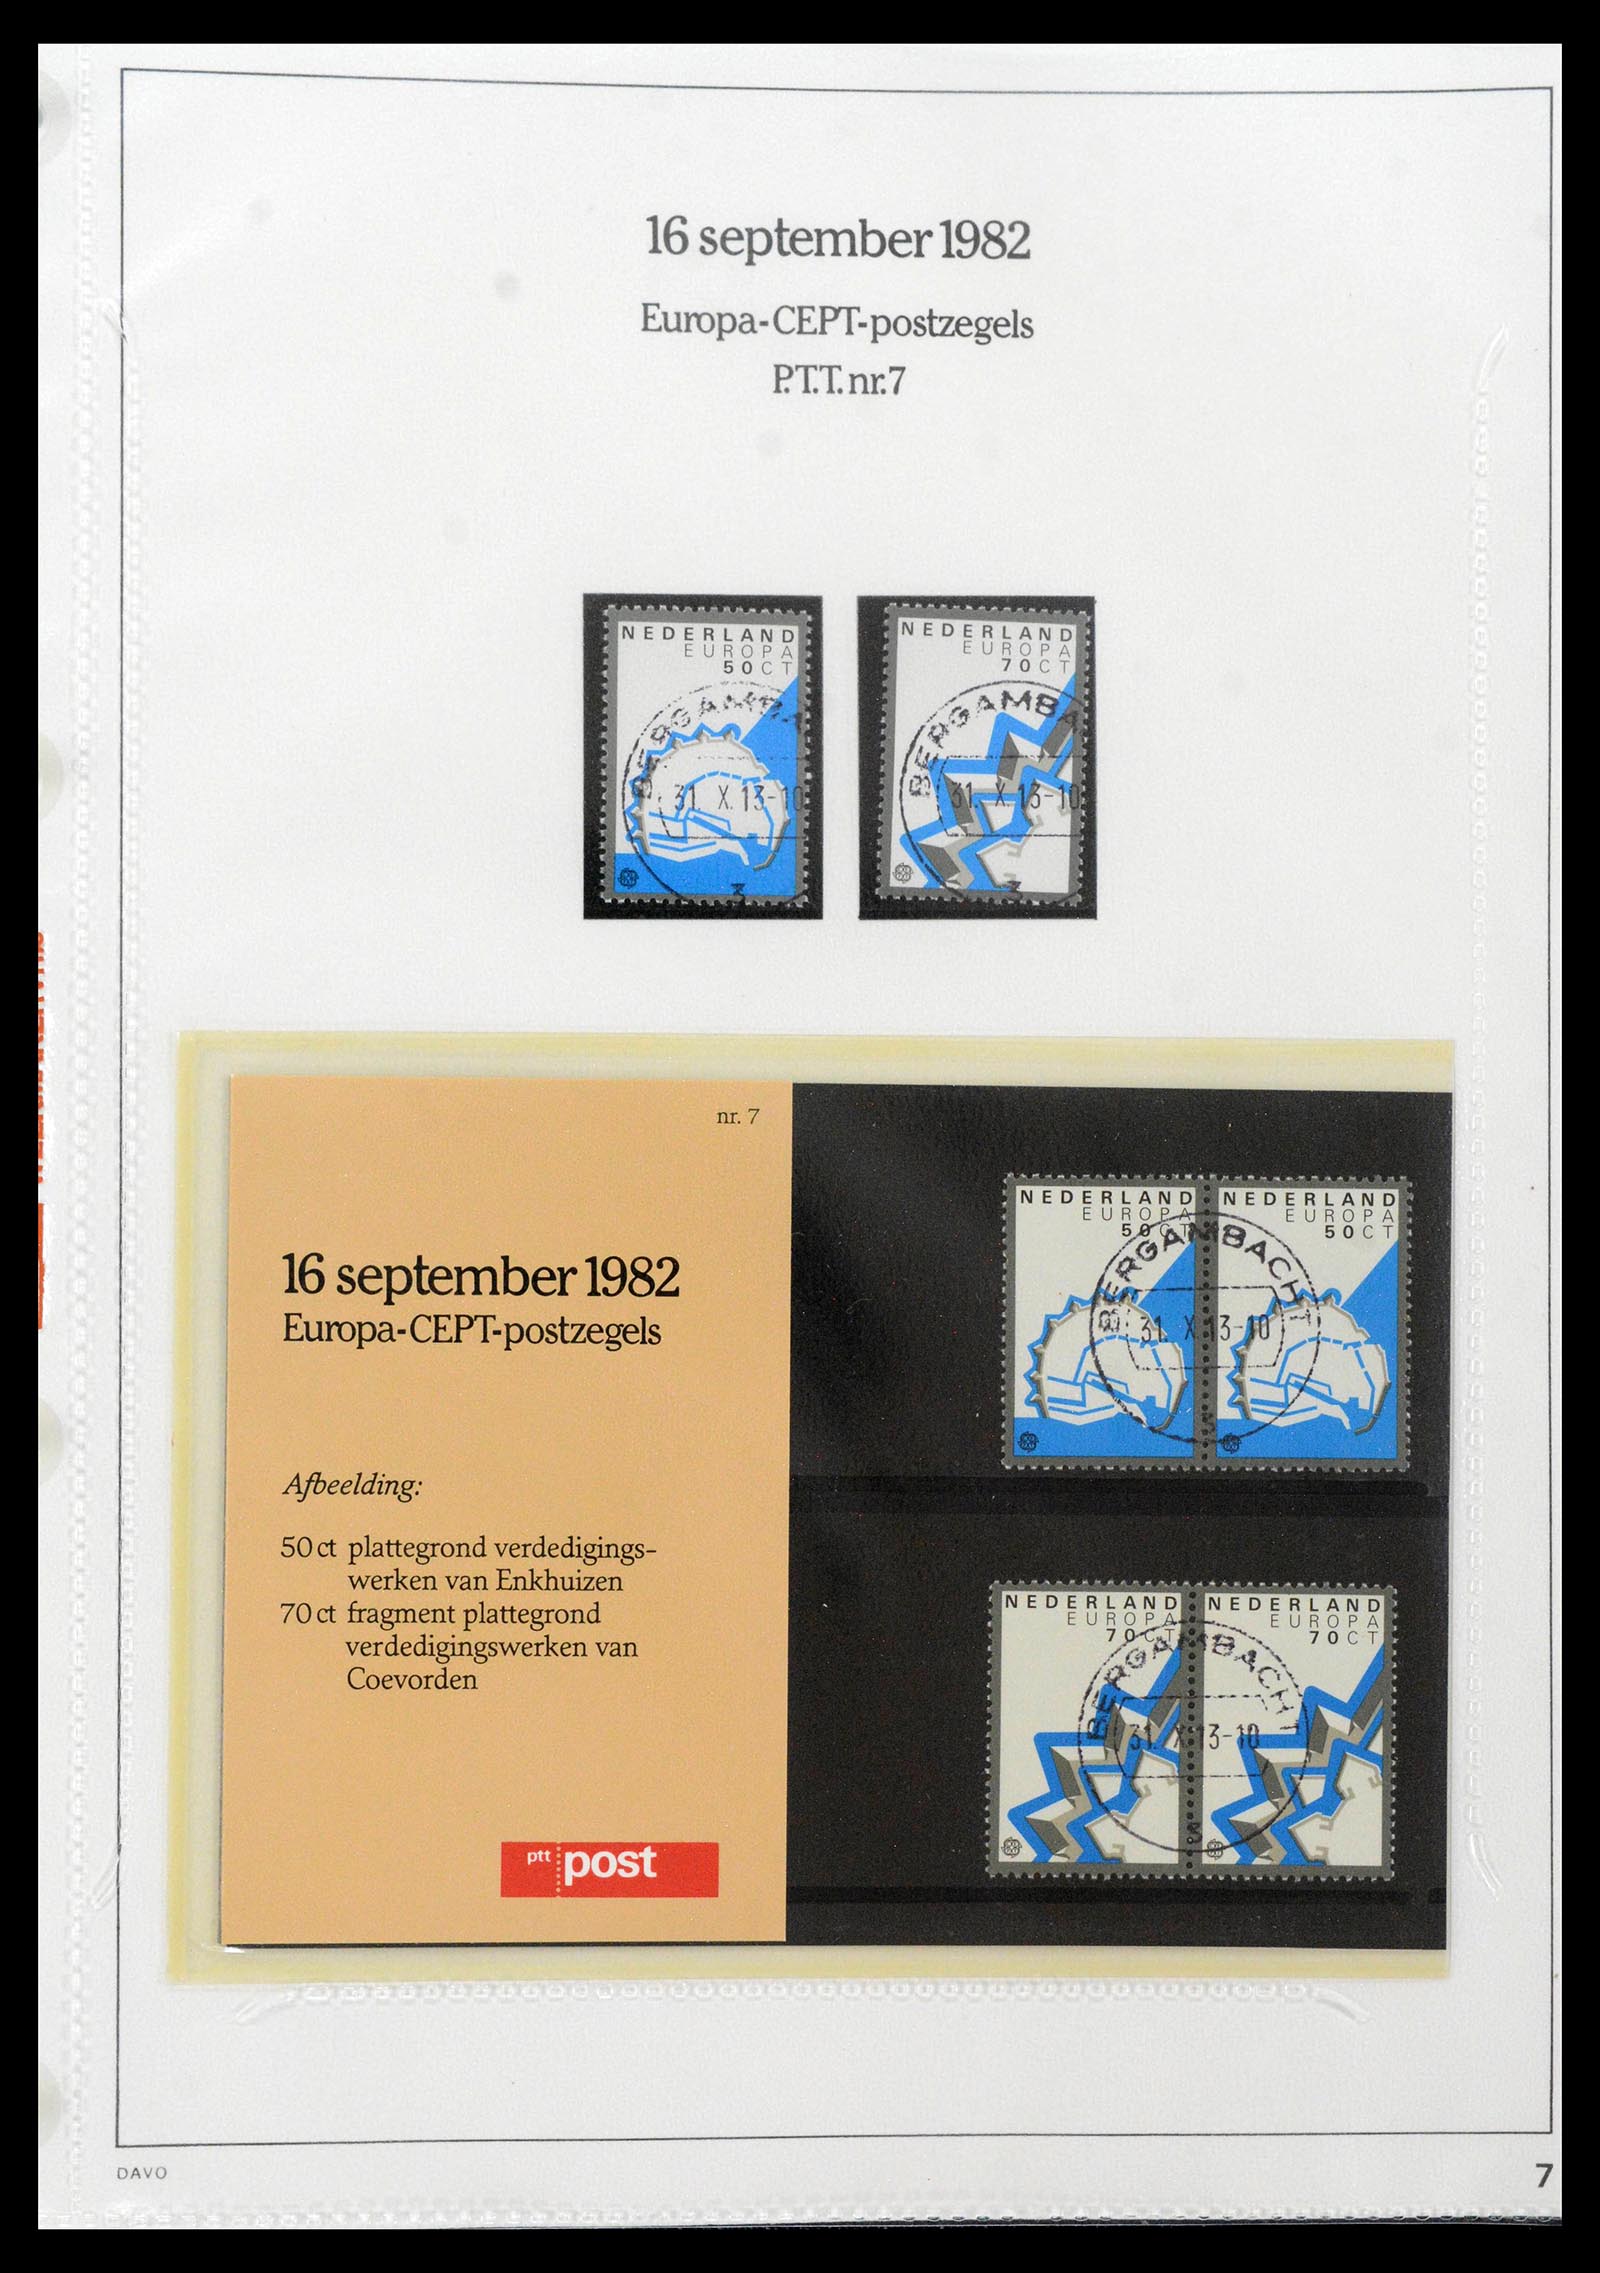 39121 0007 - Stamp collection 39121 Netherlands presentationpacks 1982-2001.